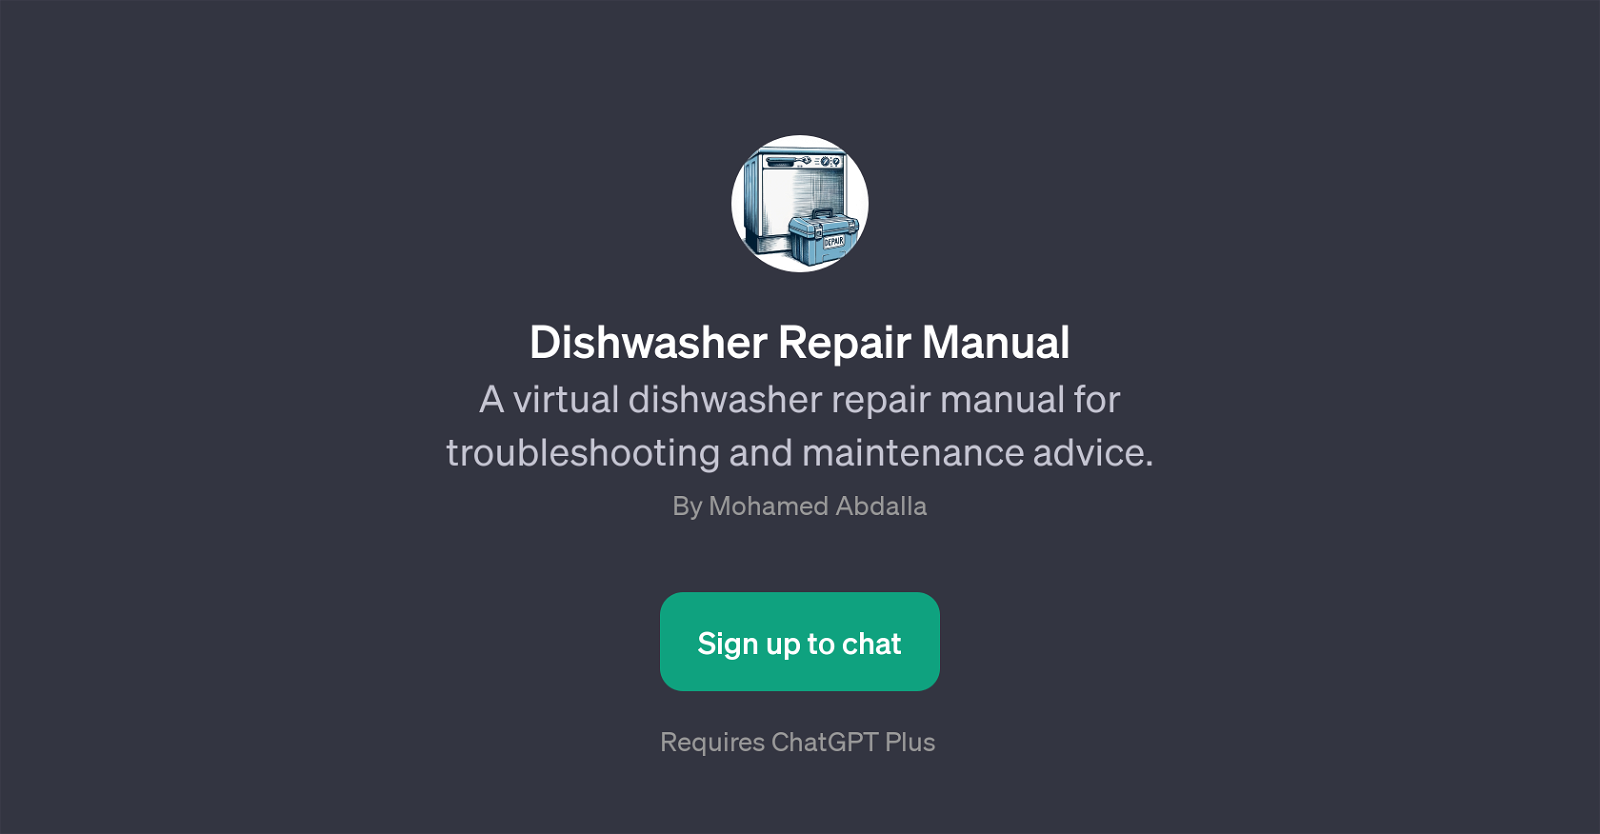 Dishwasher Repair Manual website